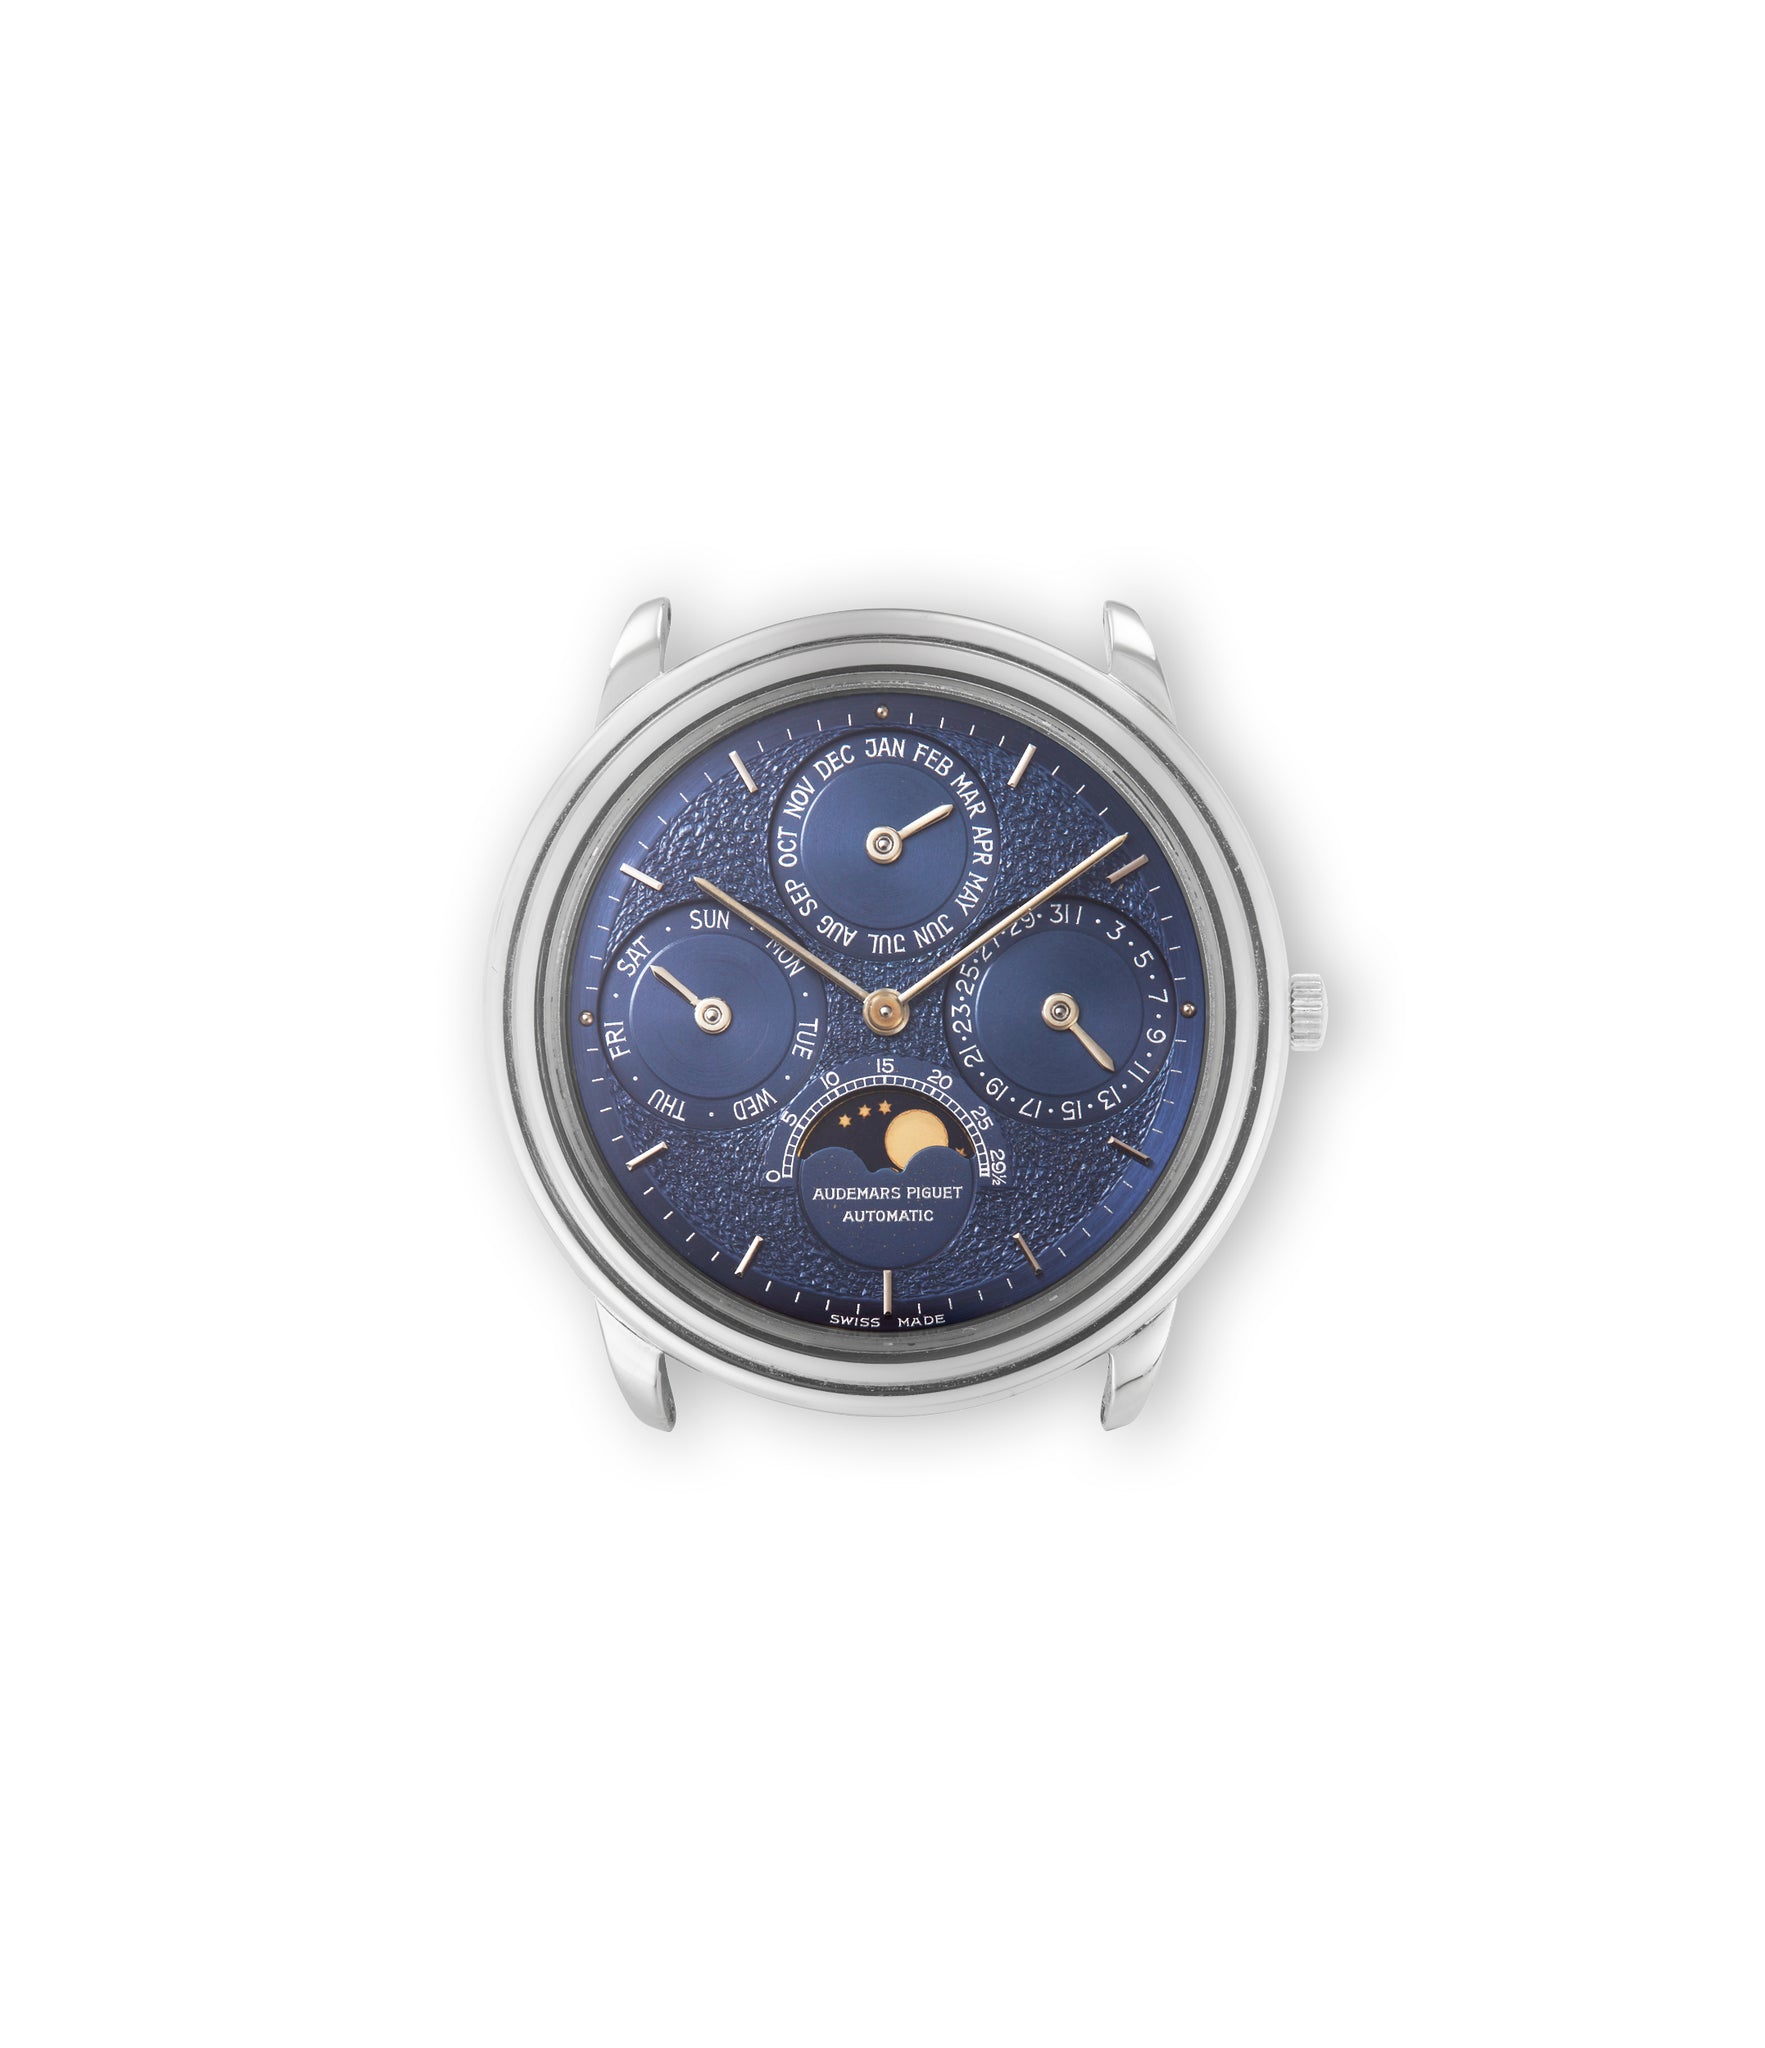 buy Audemars Piguet Quantième Perpétuel 25657/002 Platinum preowned watch at A Collected Man London